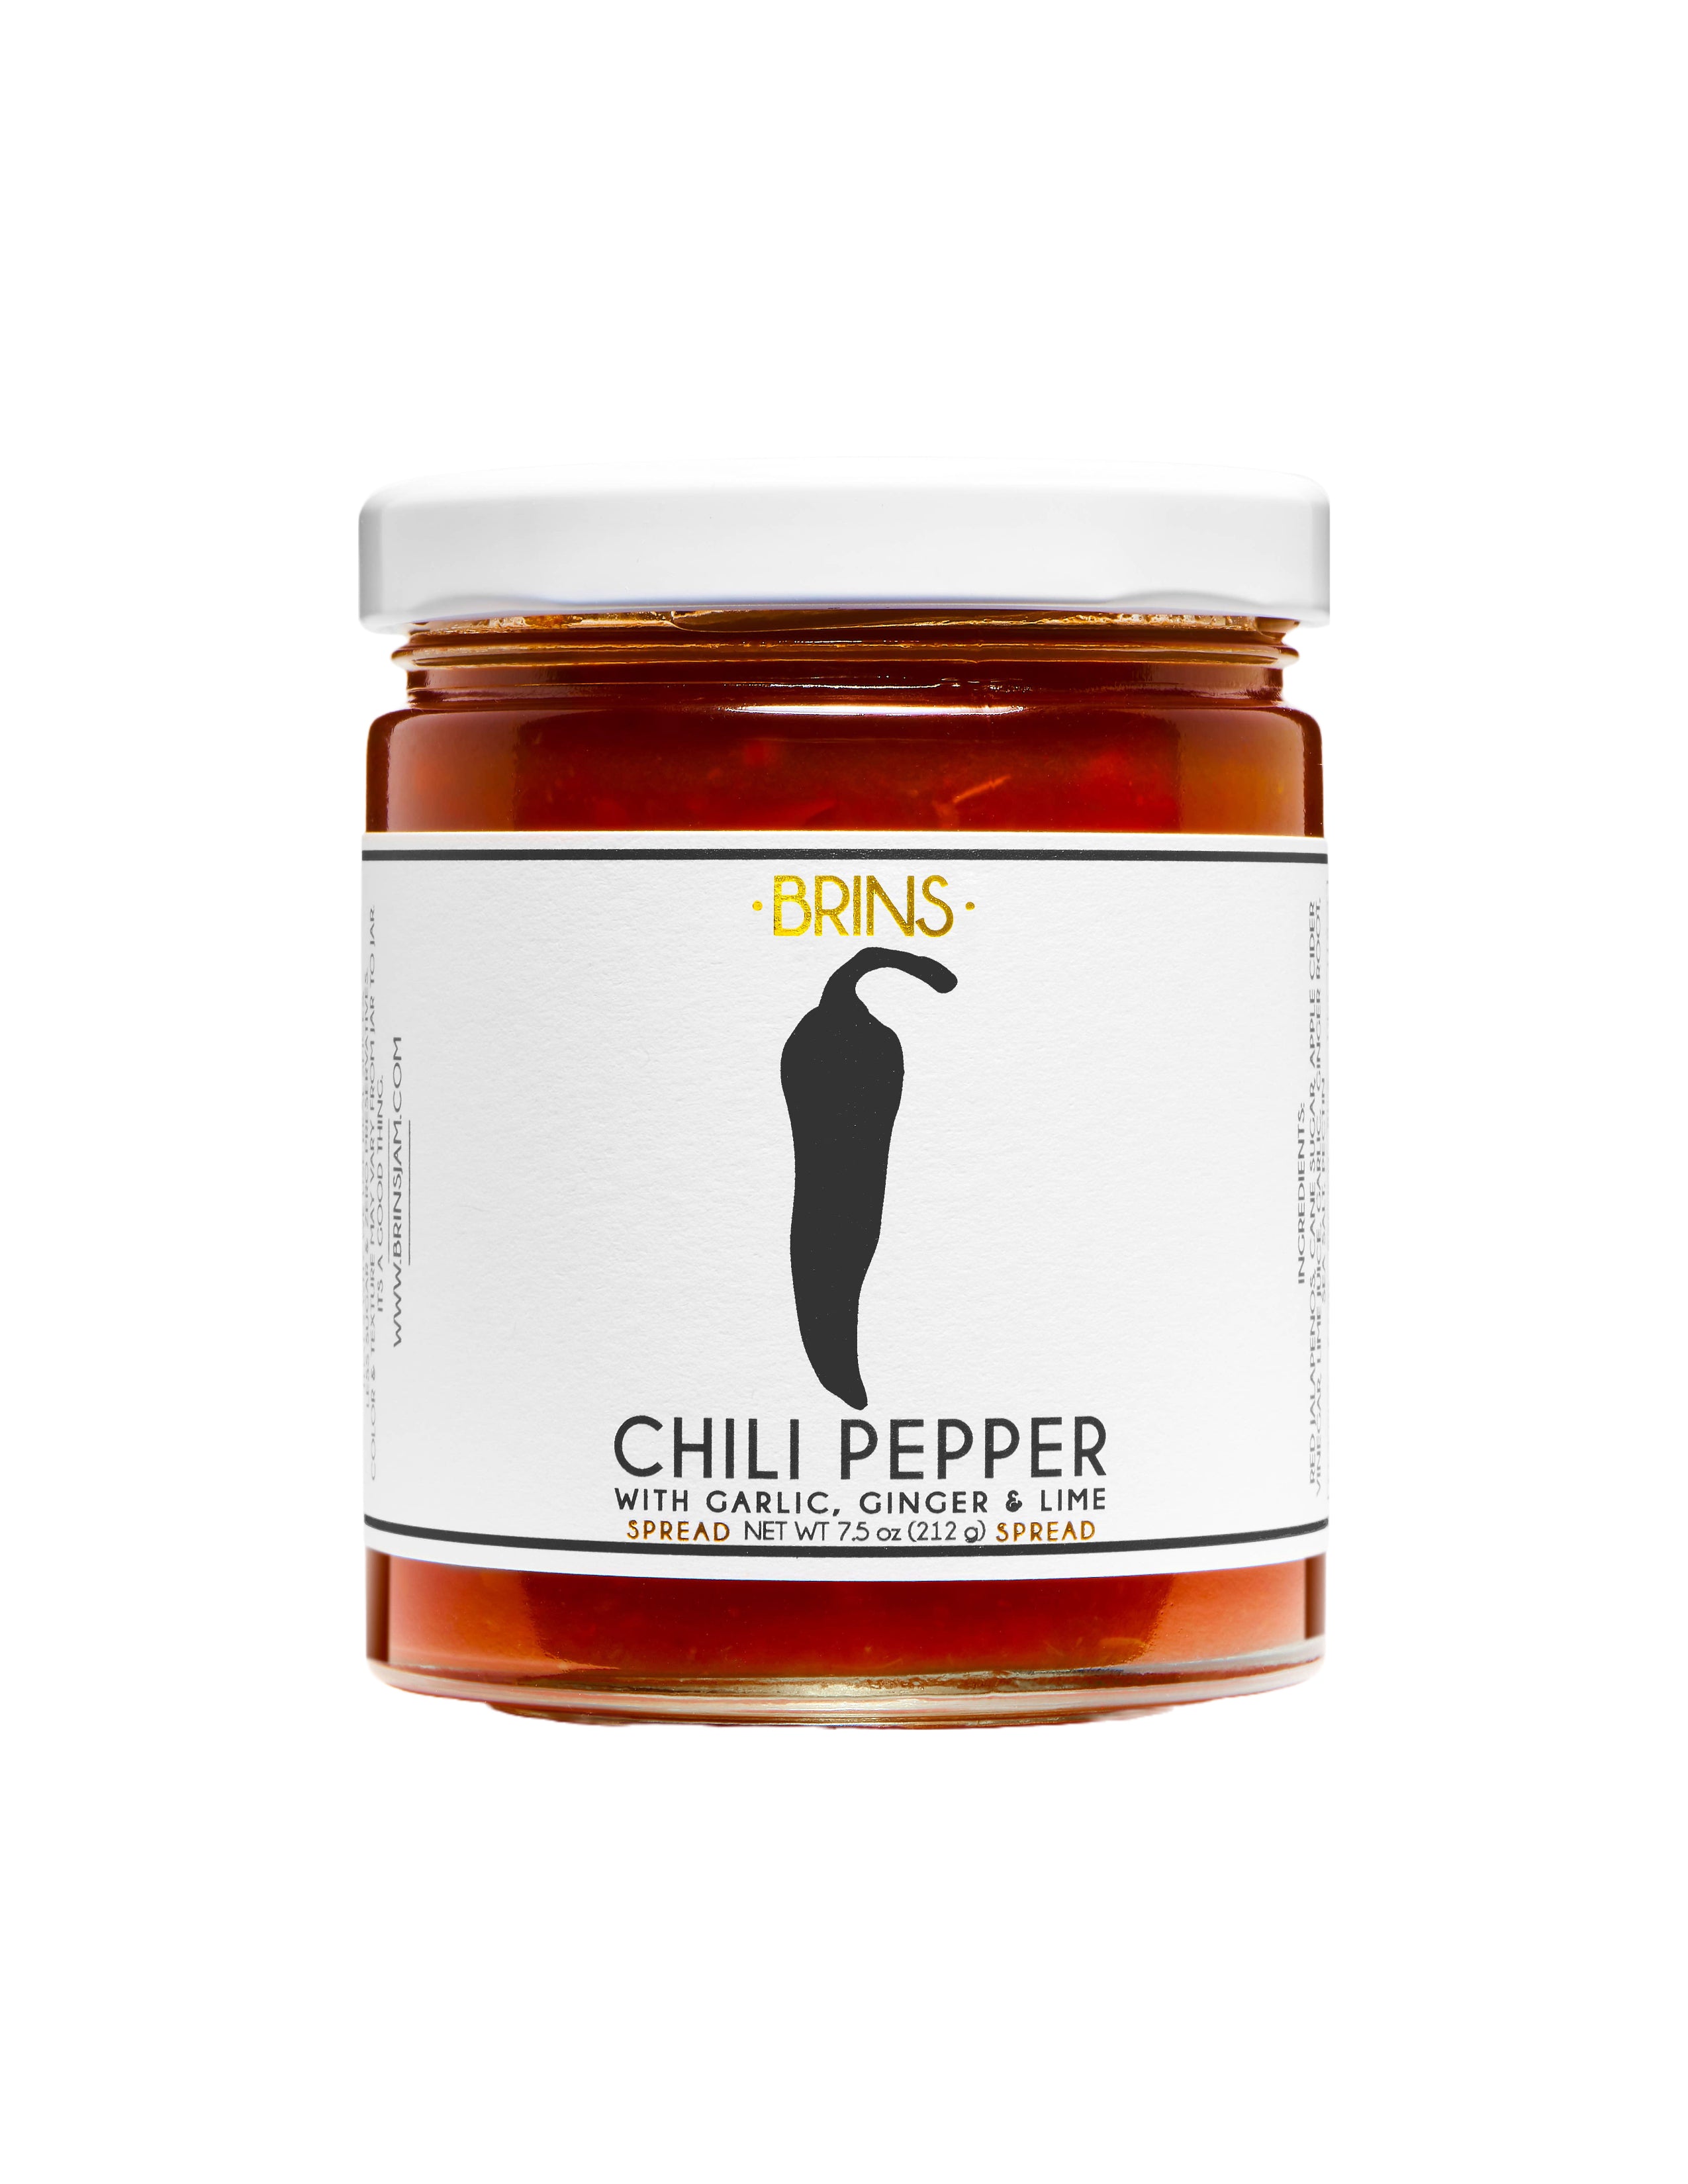 Chili Pepper Spread and Preserve